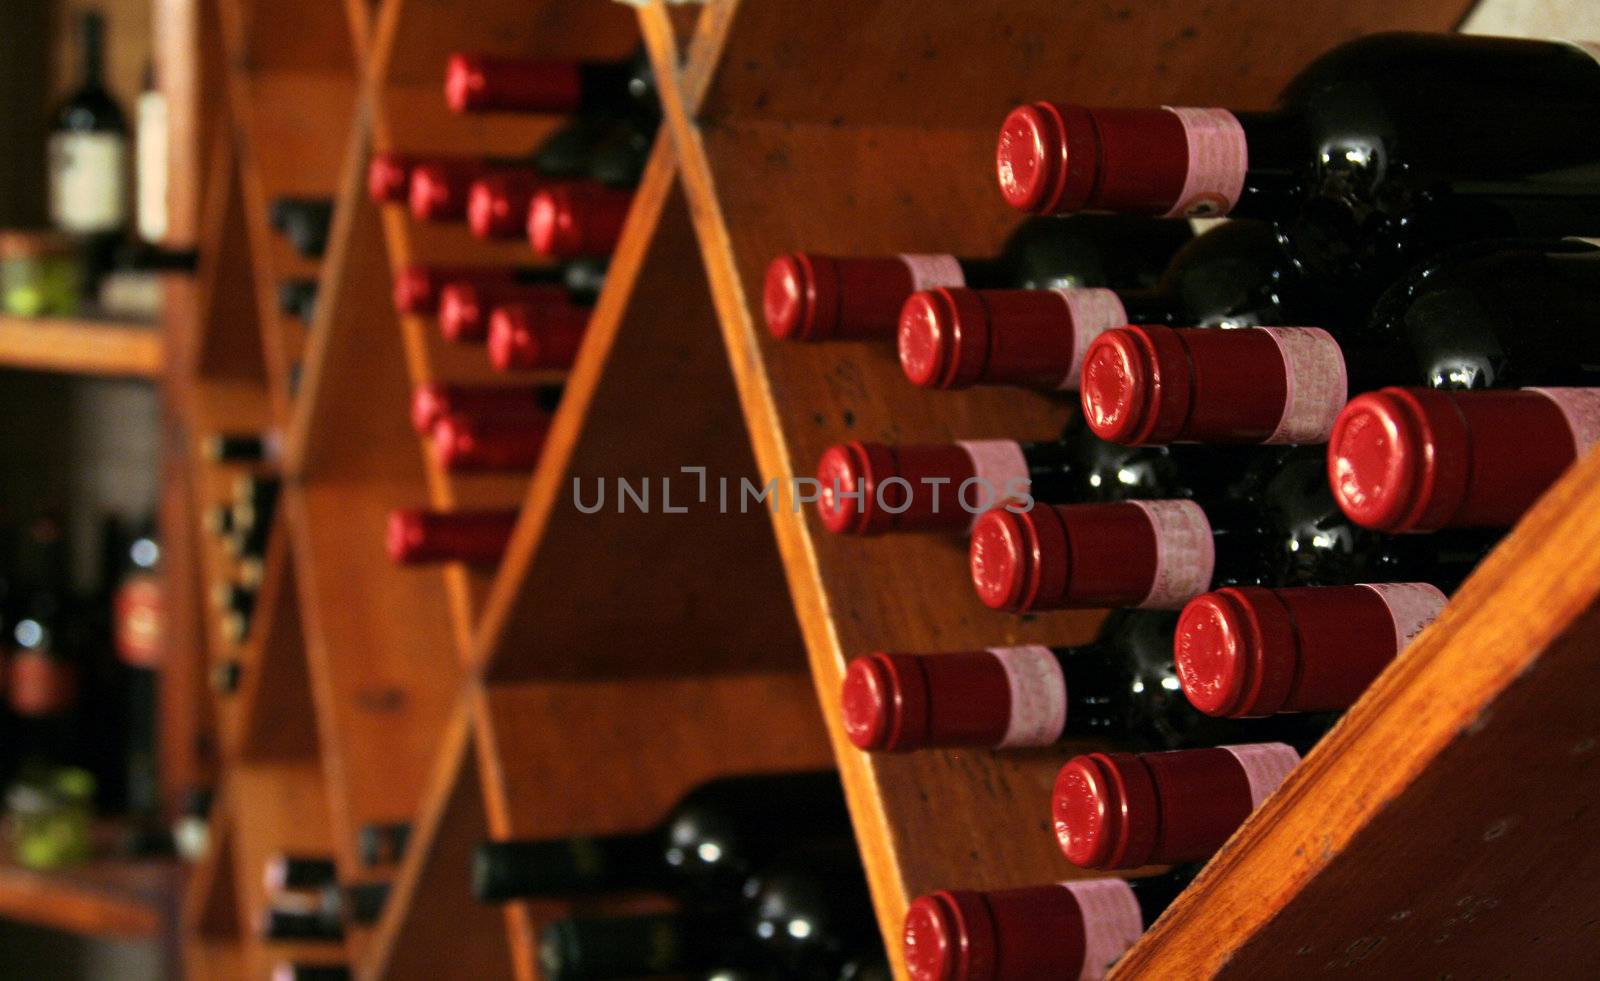 A buch of wine bottles in a rack in a wine cellar.